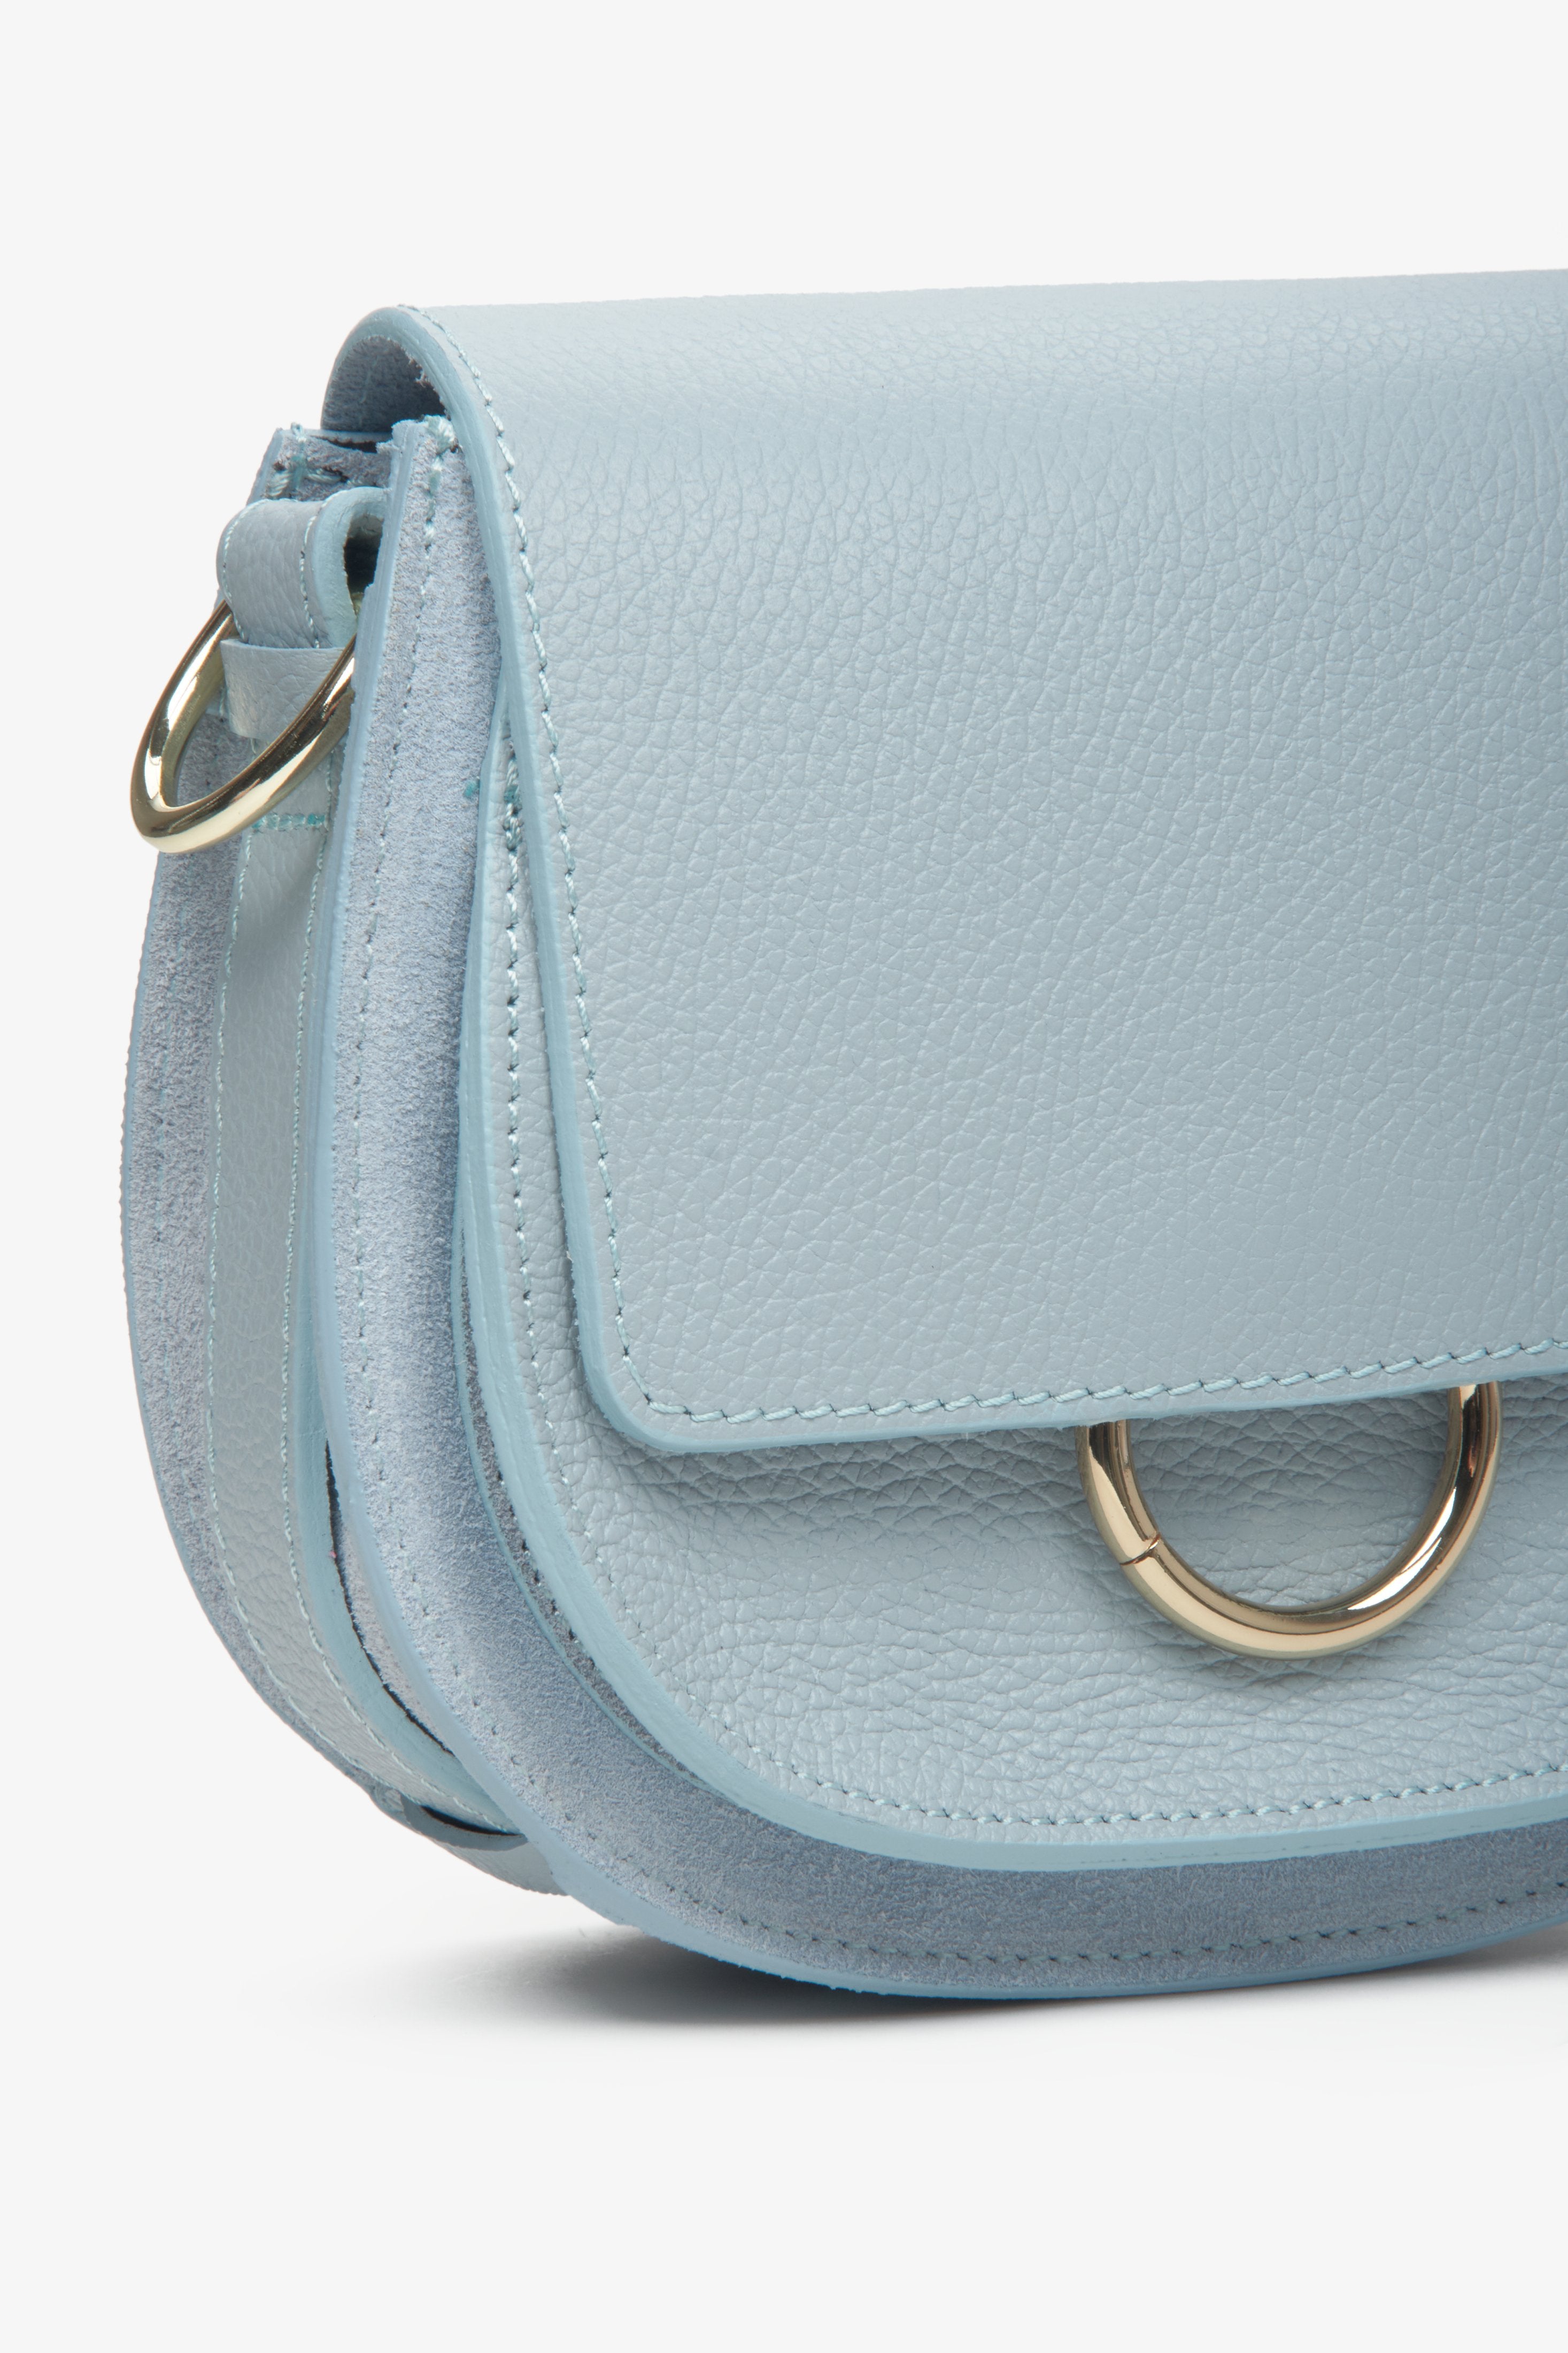 Niebieska, mała torebka damska Estro produkcji włoskiej - zbliżenie na detale.